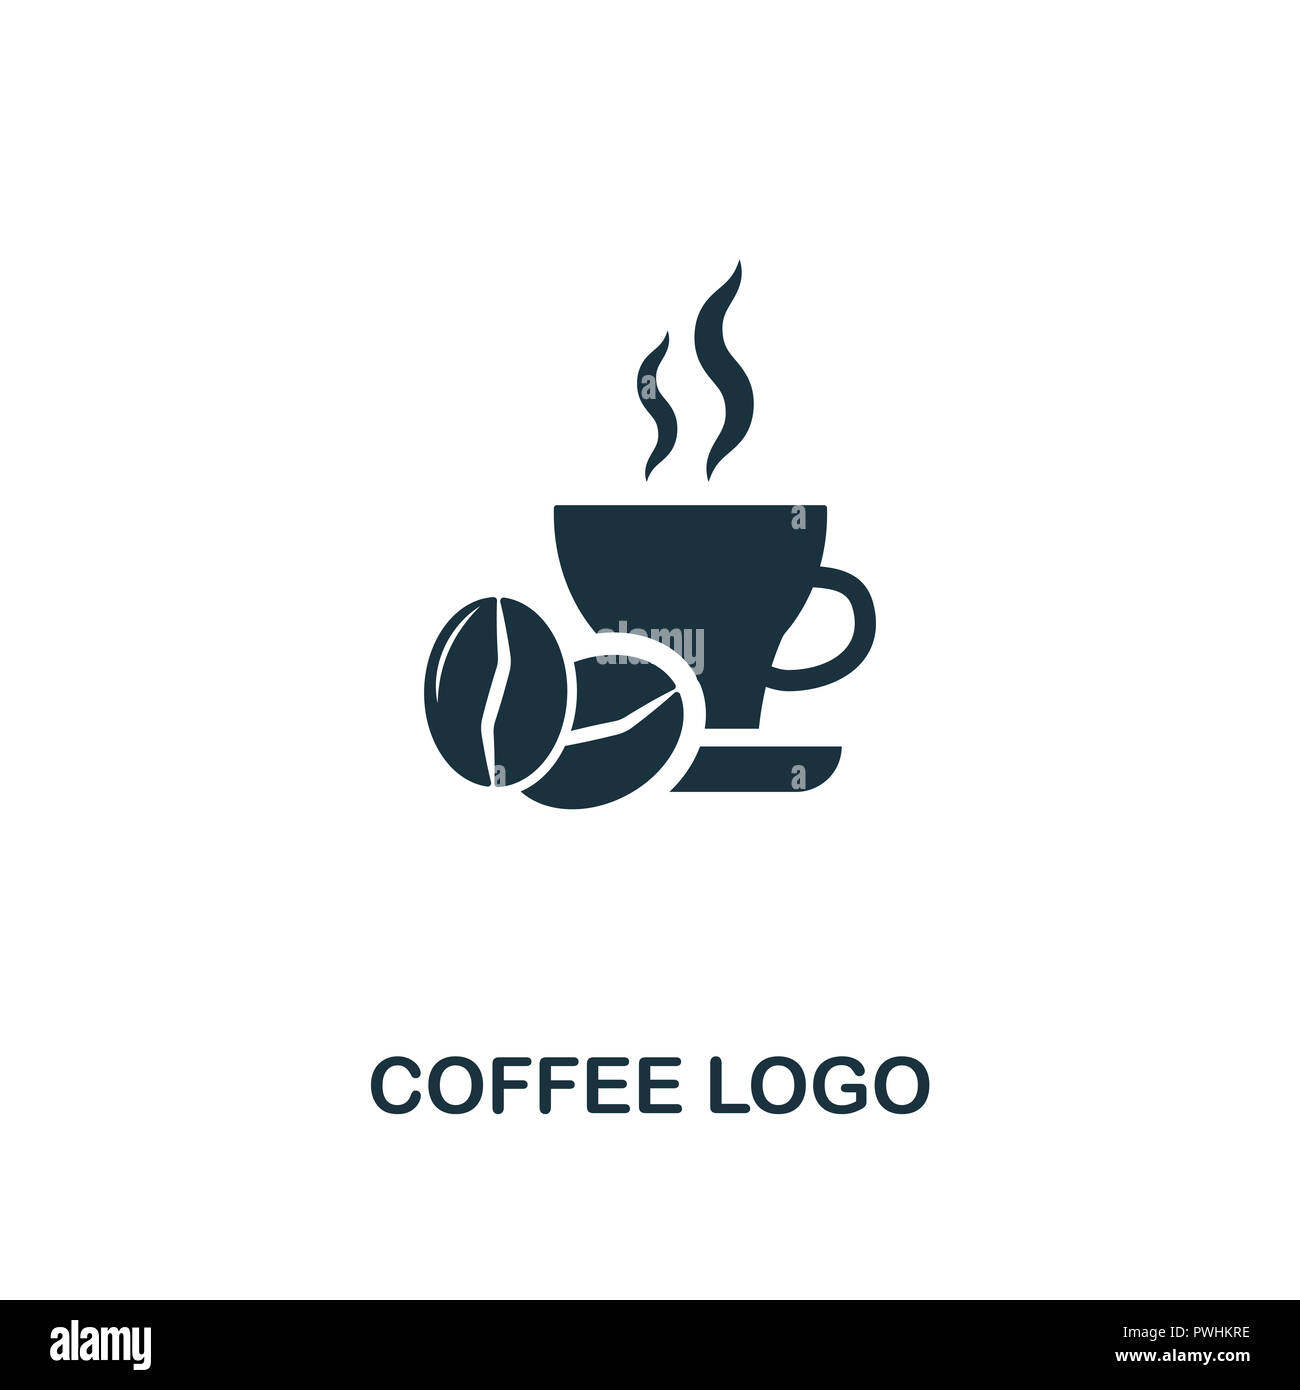 Kaffee Logo Symbol. Premium Design von Coffe Shop Kollektion. UX und UI.  Pixel Perfect/logo Symbol. Für Webdesign, Anwendungen, Software, drucken  Stockfotografie - Alamy